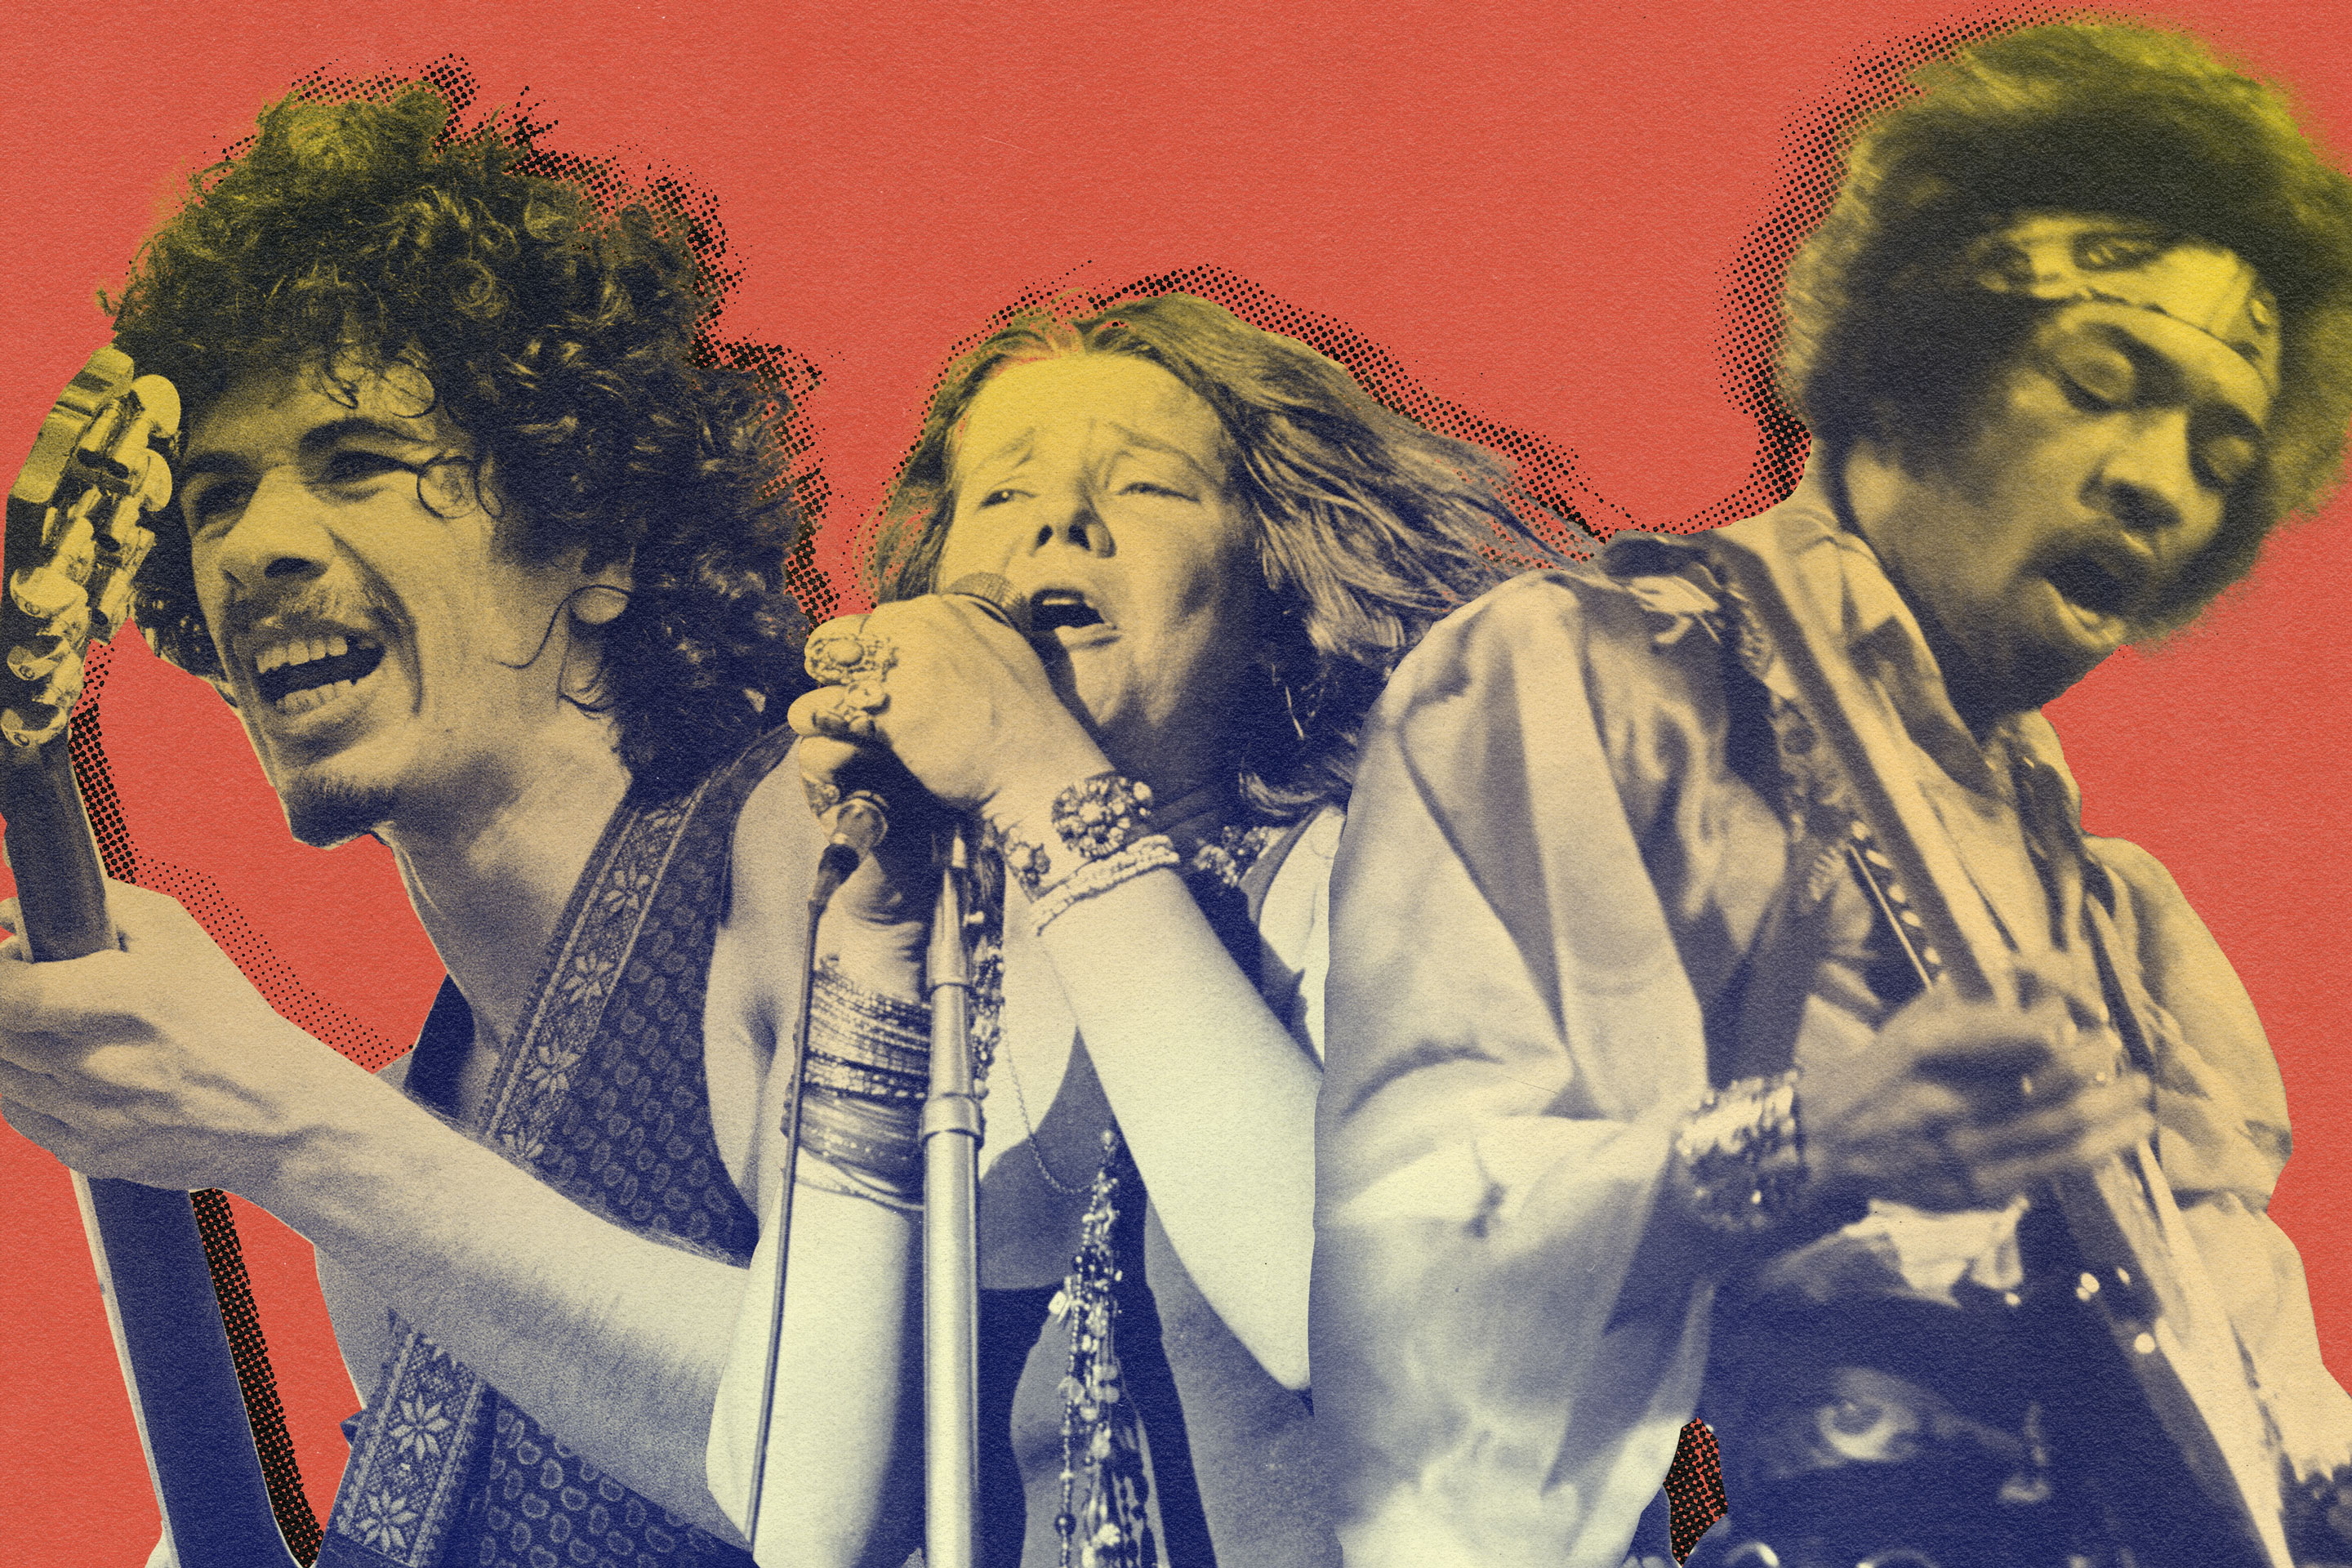 Iconic Woodstock 1969